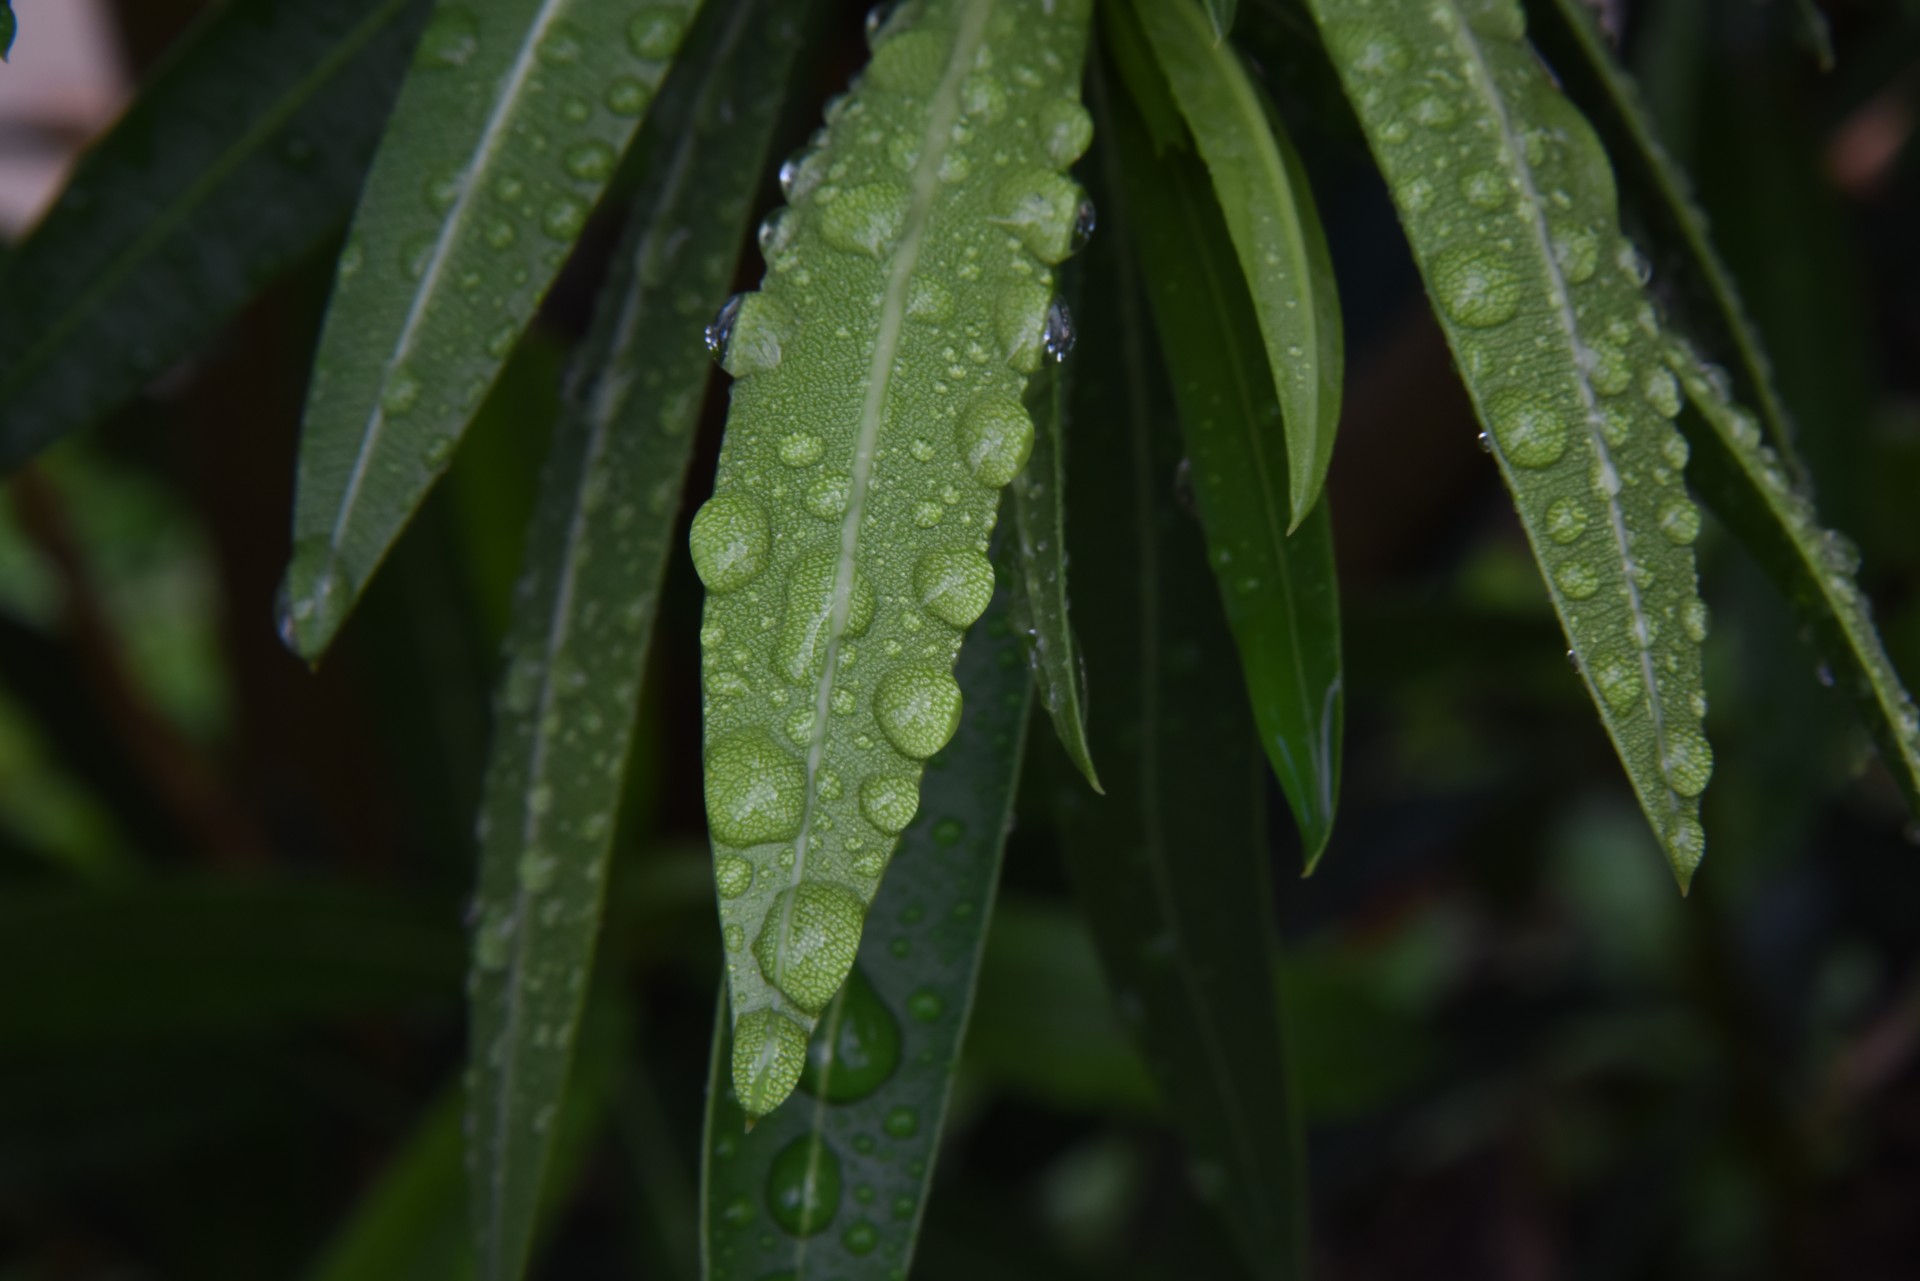 Rain On Pointed Leaves